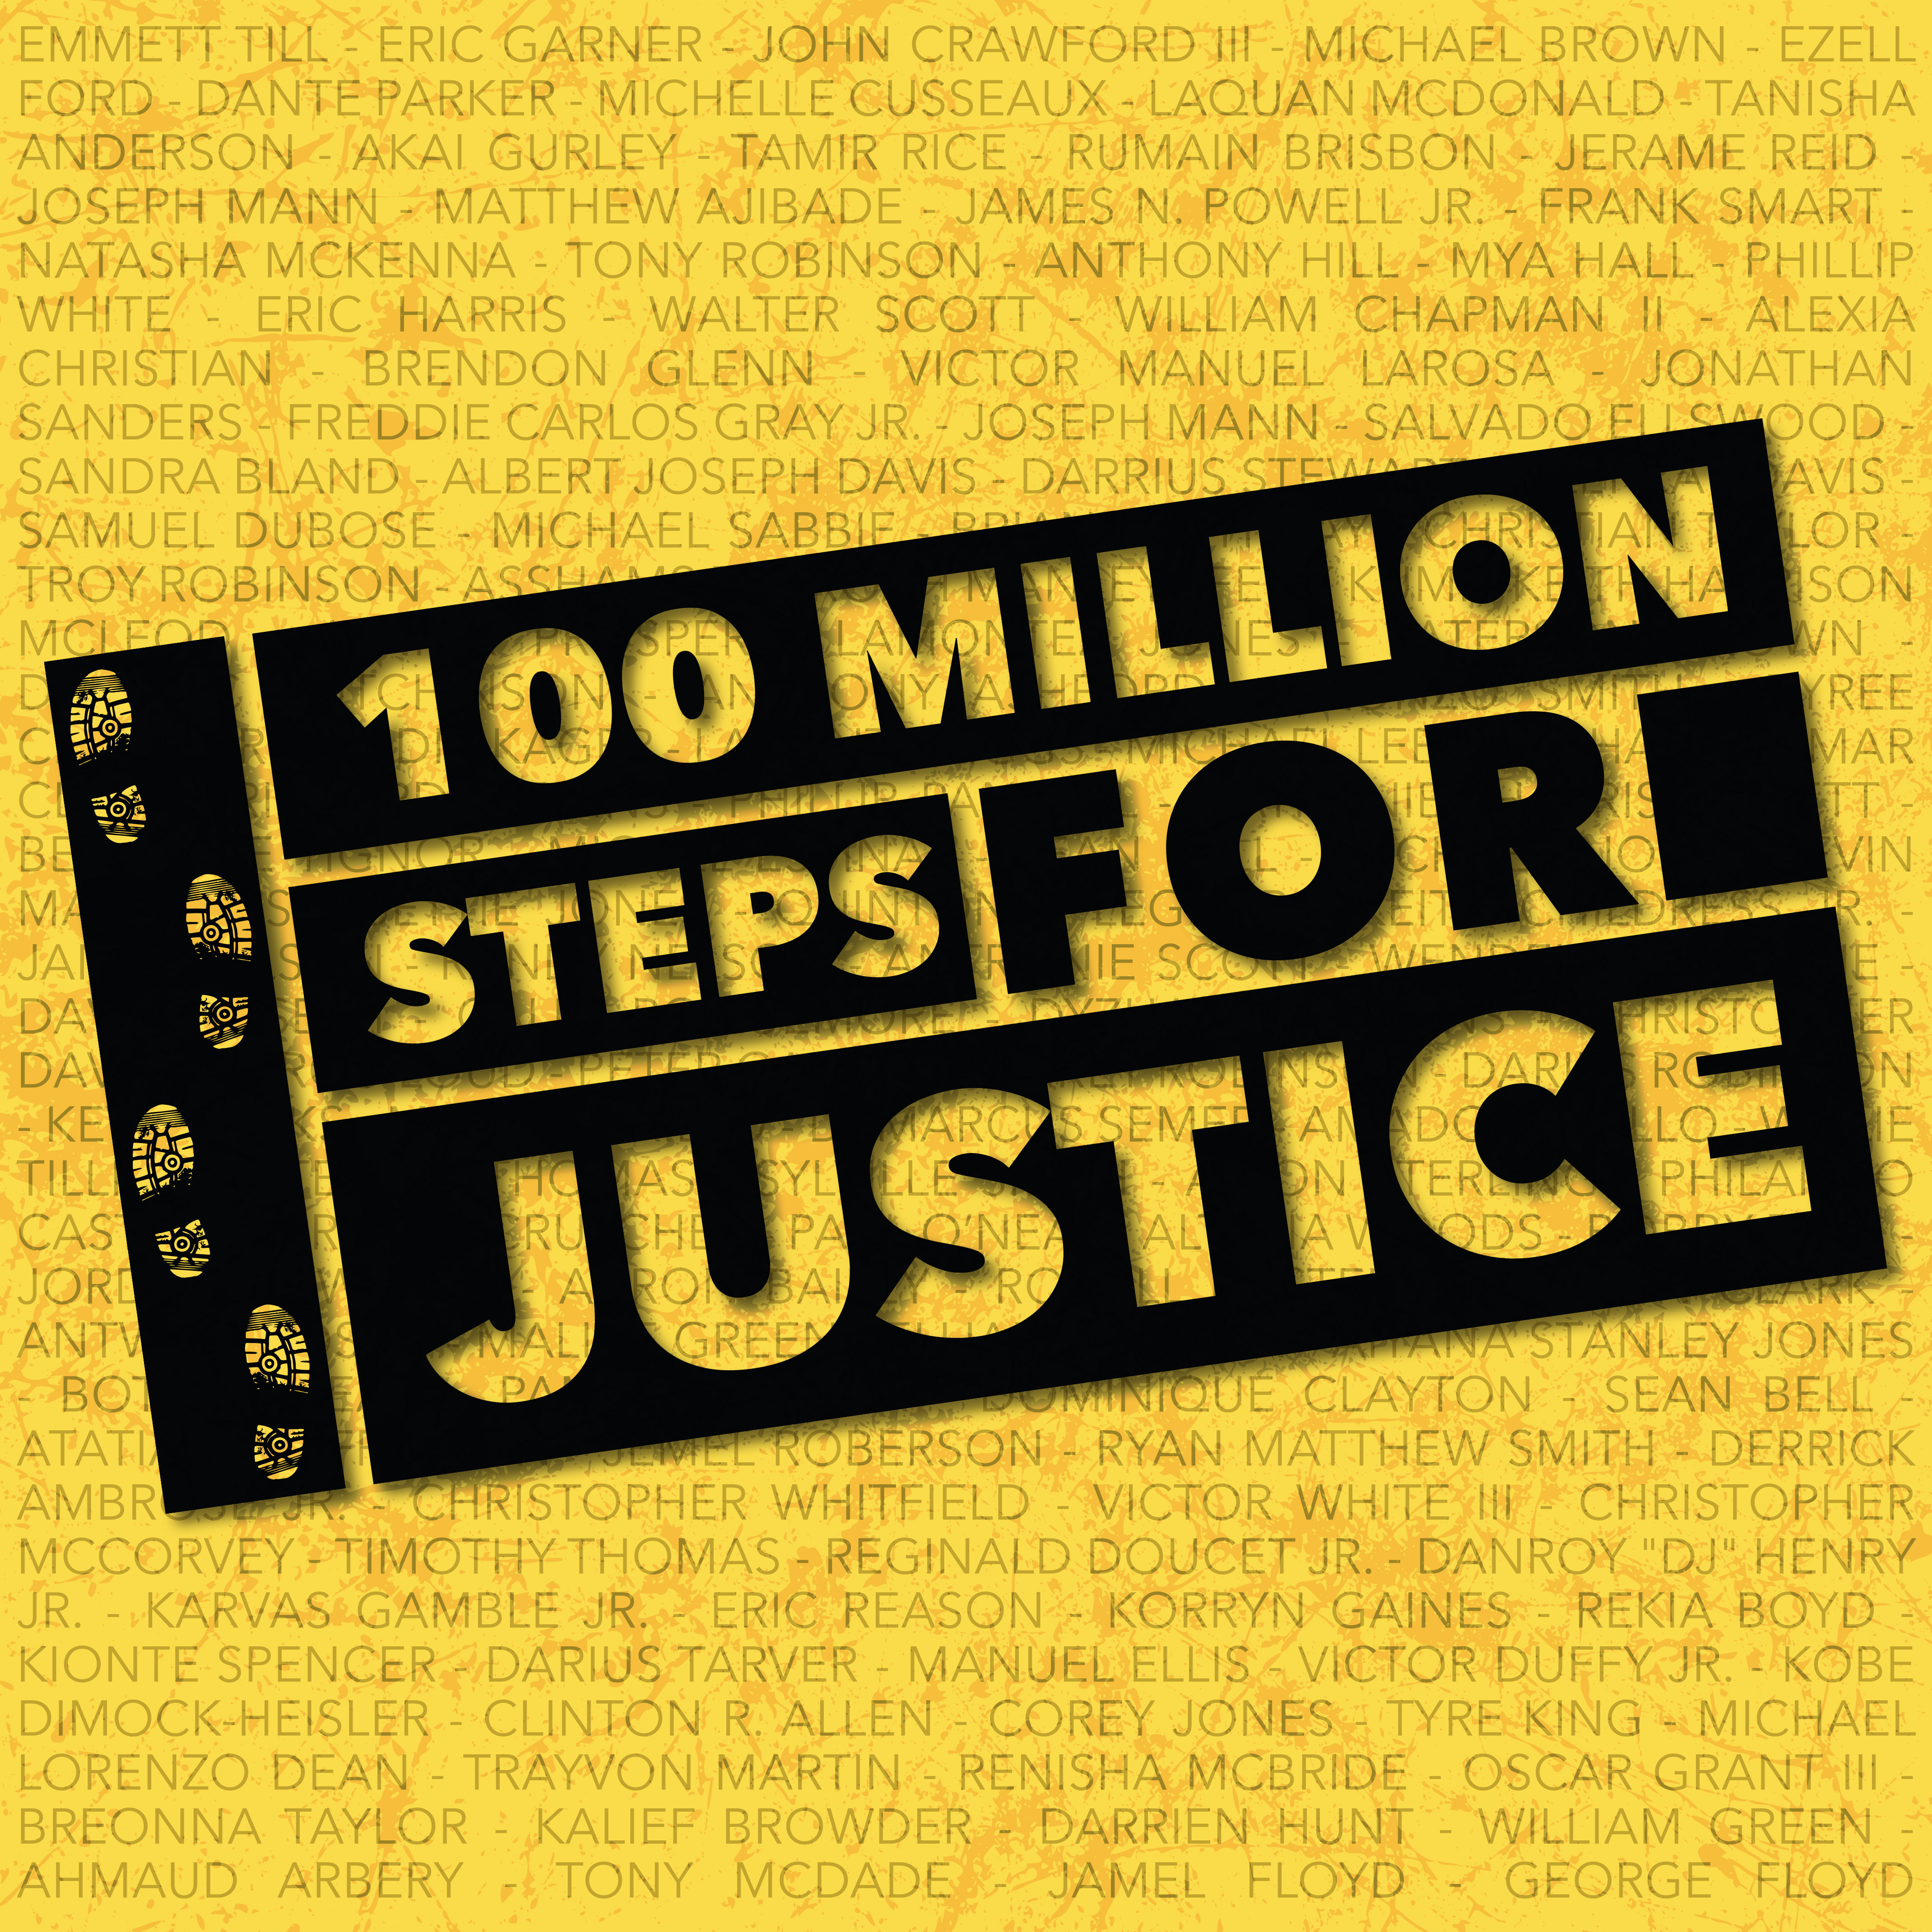 100 Million Steps for Justice